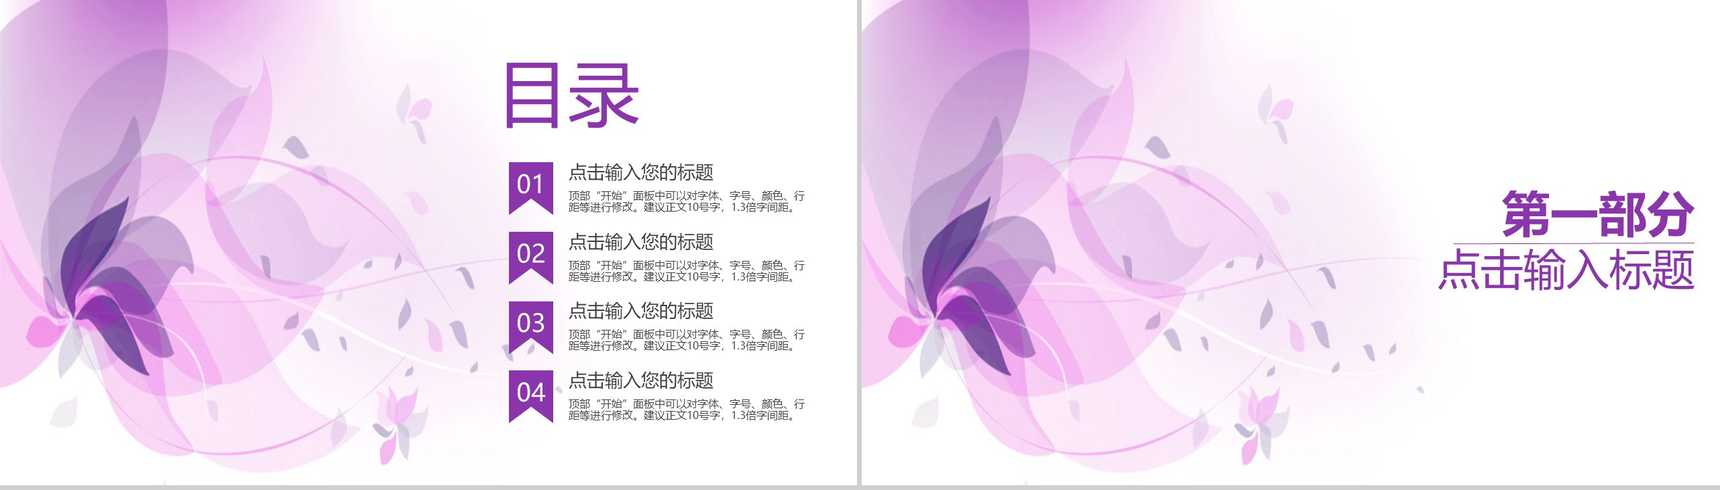 浅紫色简约唯美商务风企业宣传PPT模板-2